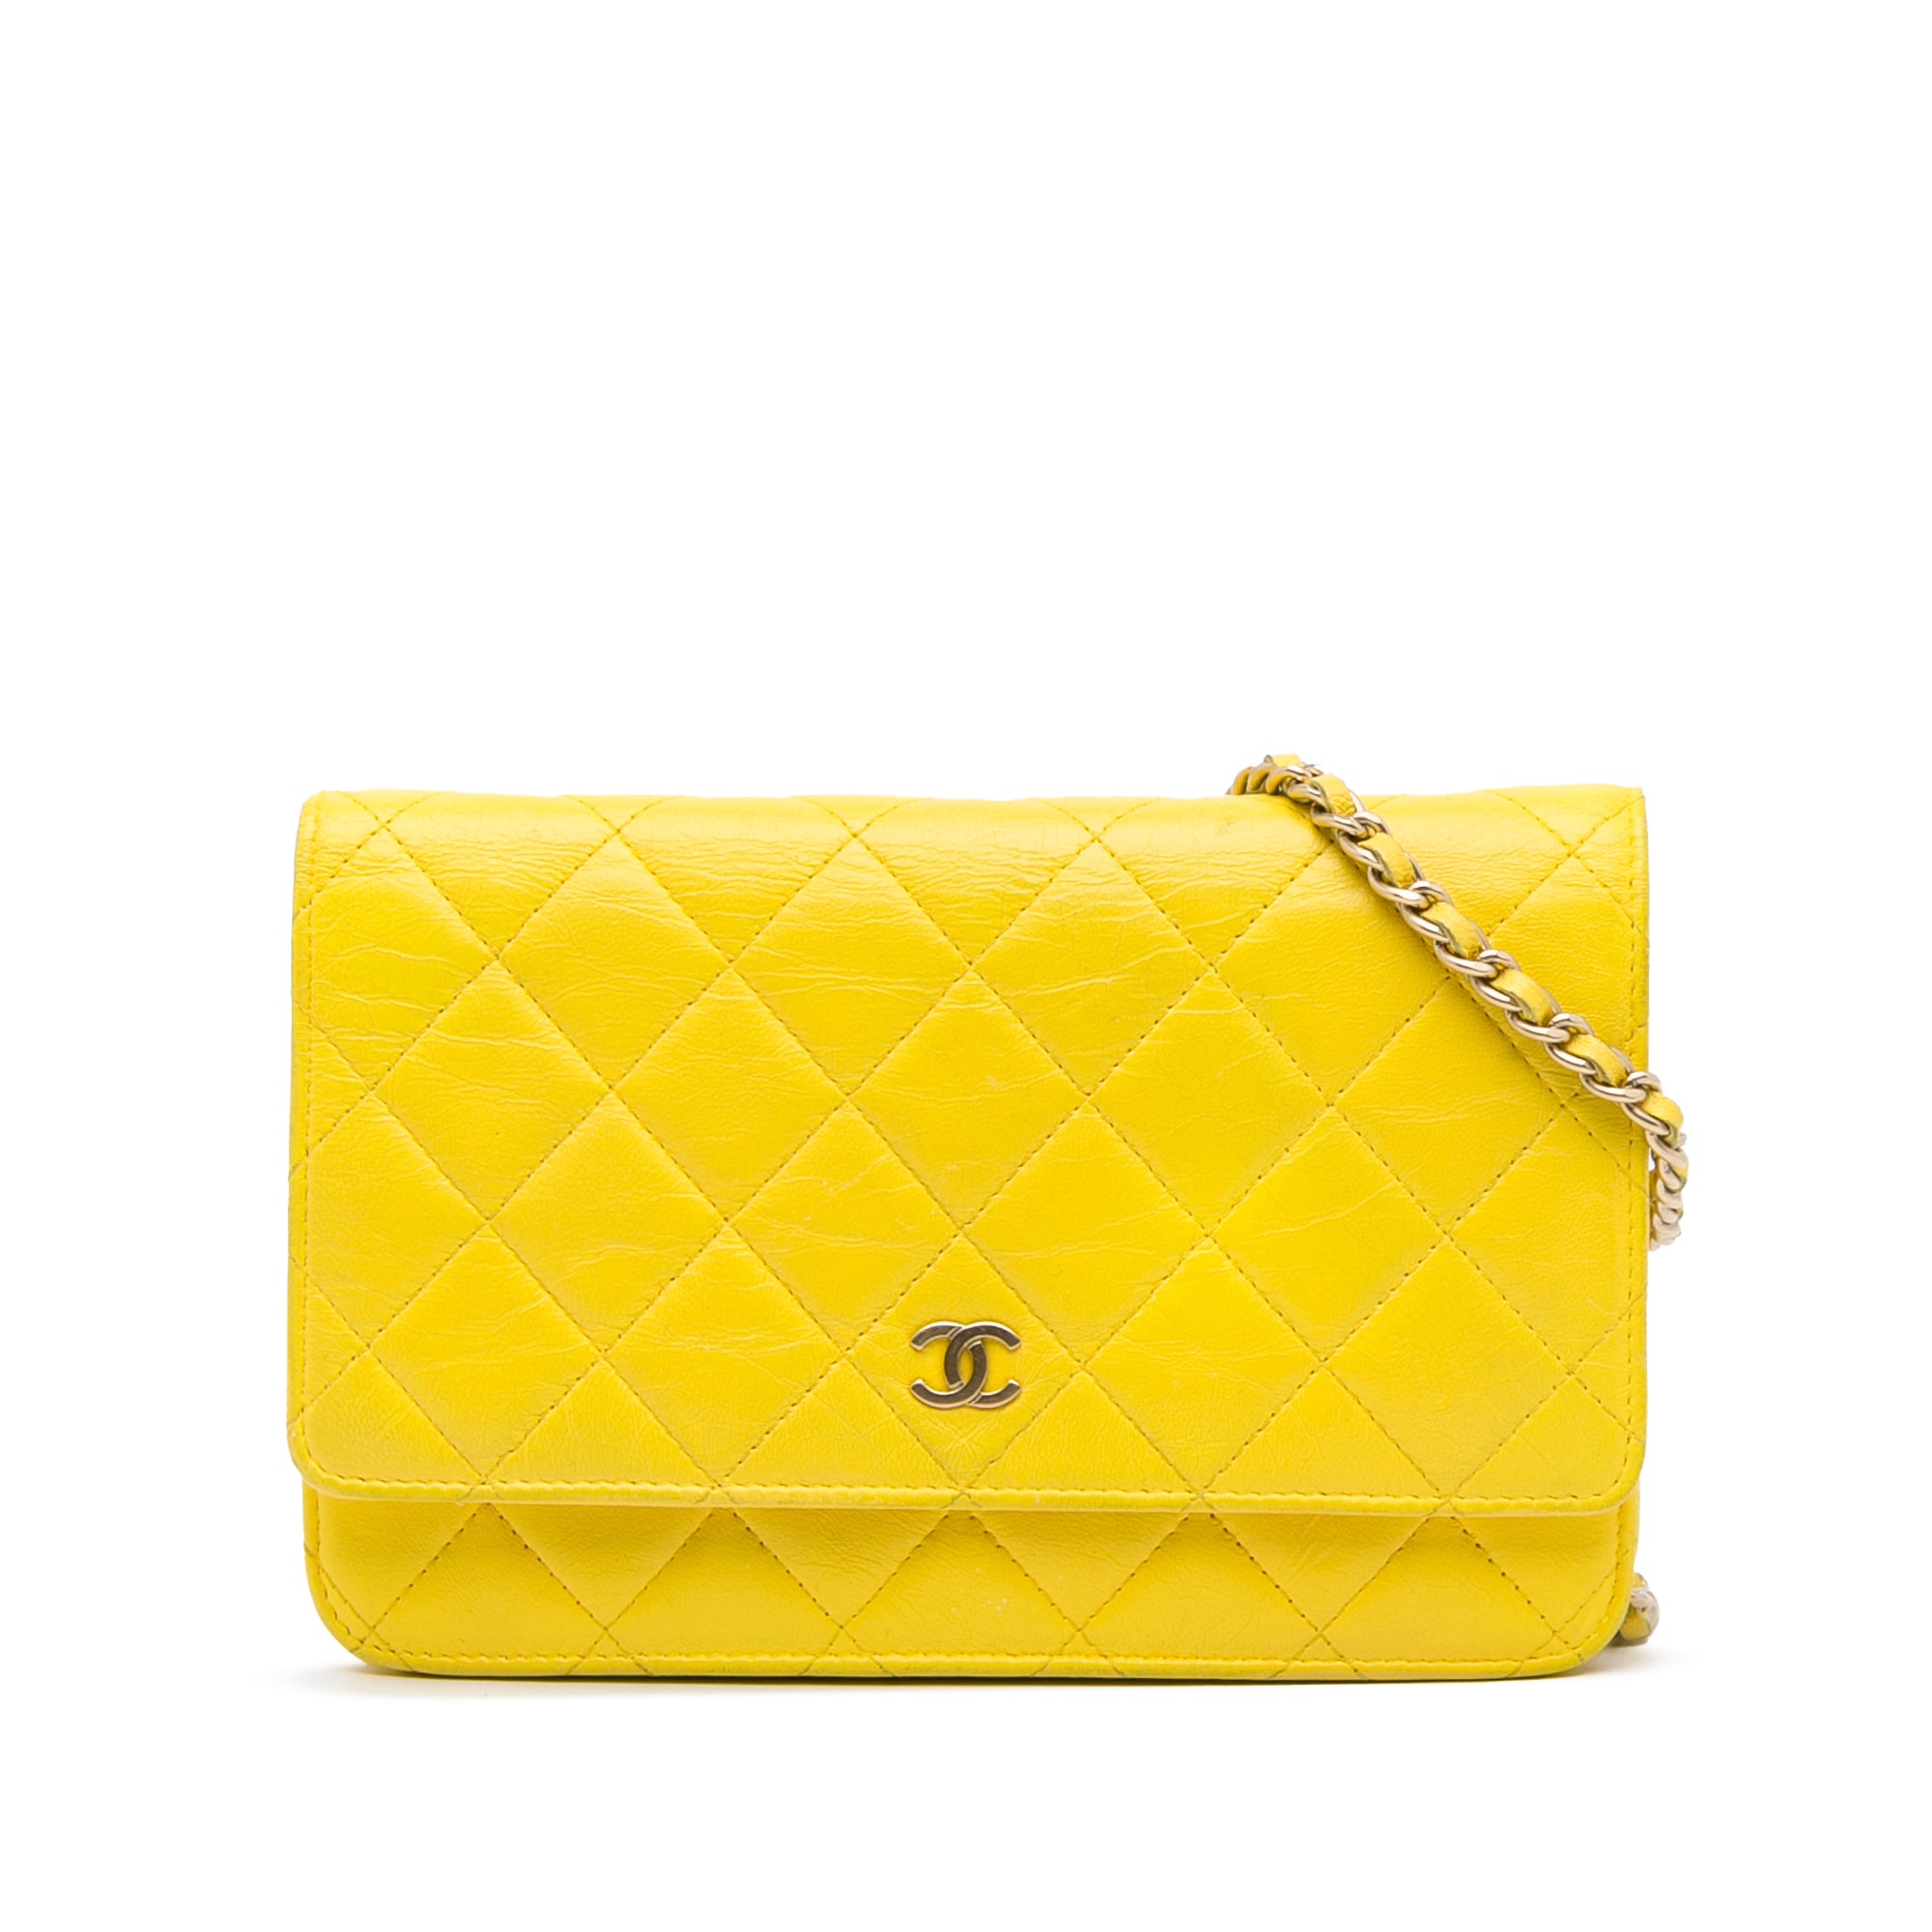 Bolso de mano Chanel Mini Timeless en piedras de fantasía degradadas azules, Yellow Chanel Classic Wallet on Chain Crossbody Bag